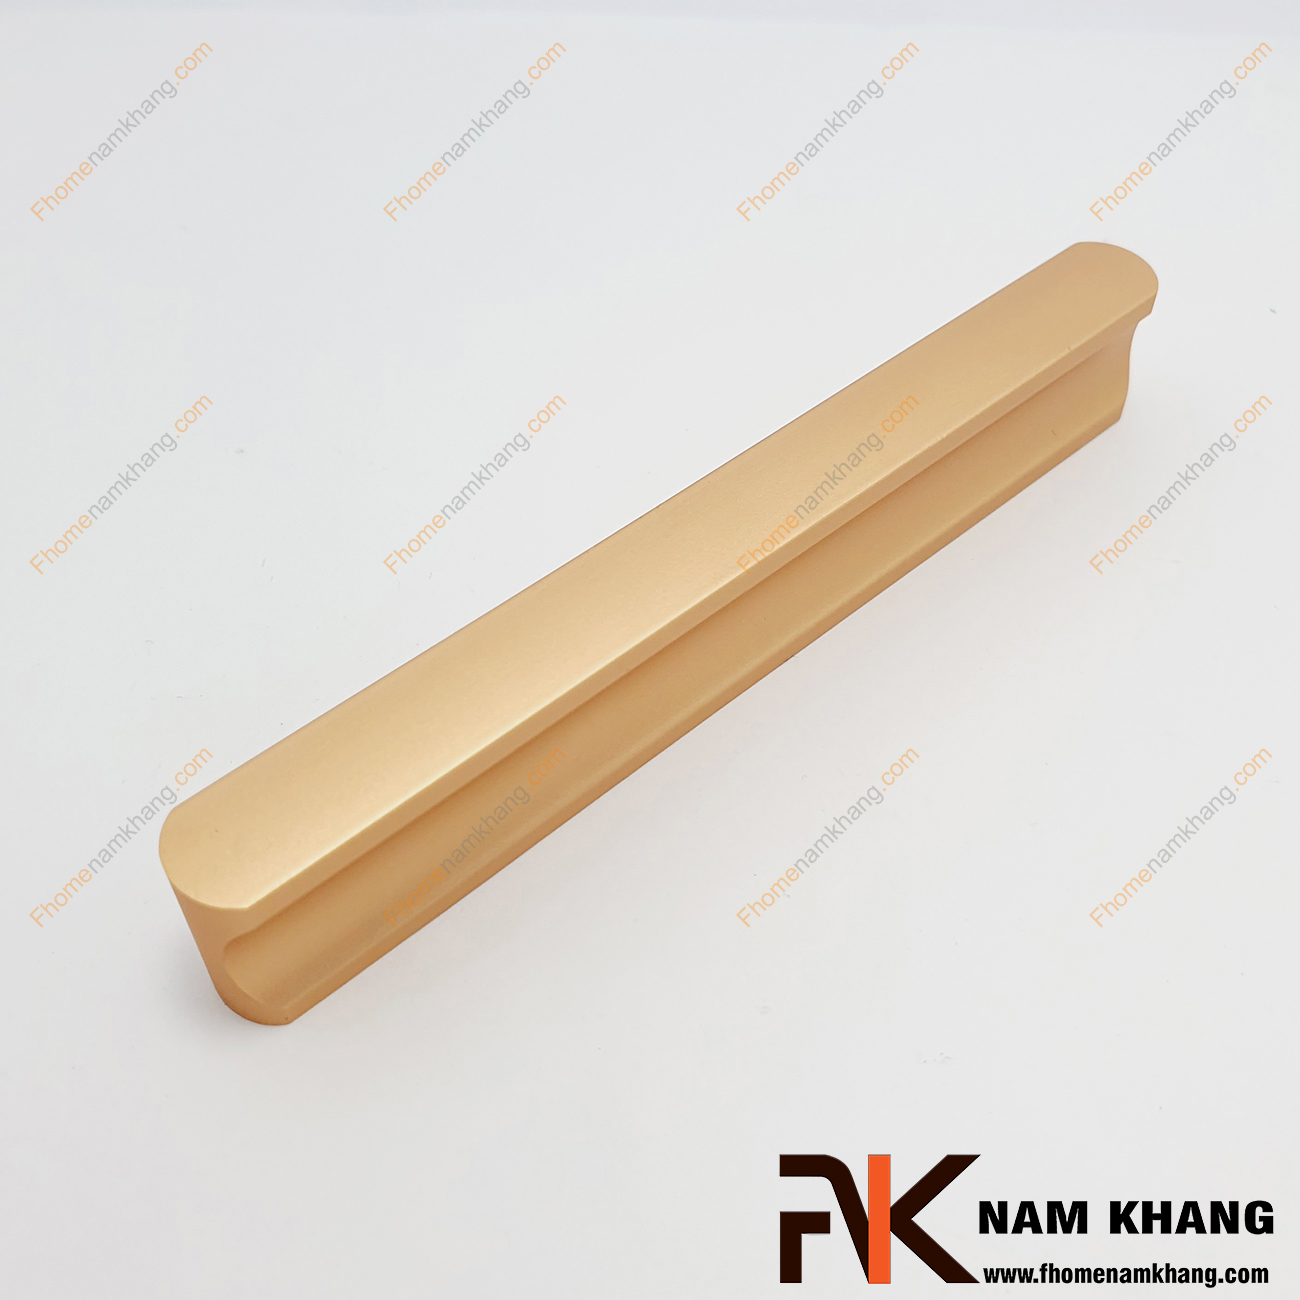 Tay nắm tủ dạng thanh dài nguyên khối màu vàng mờ NK001-VB dạng tay nắm tủ thanh dài nguyên khối được sản xuất từ chất liệu hợp kim cao cấp và xử lý bề mặt kỹ thuật cao.